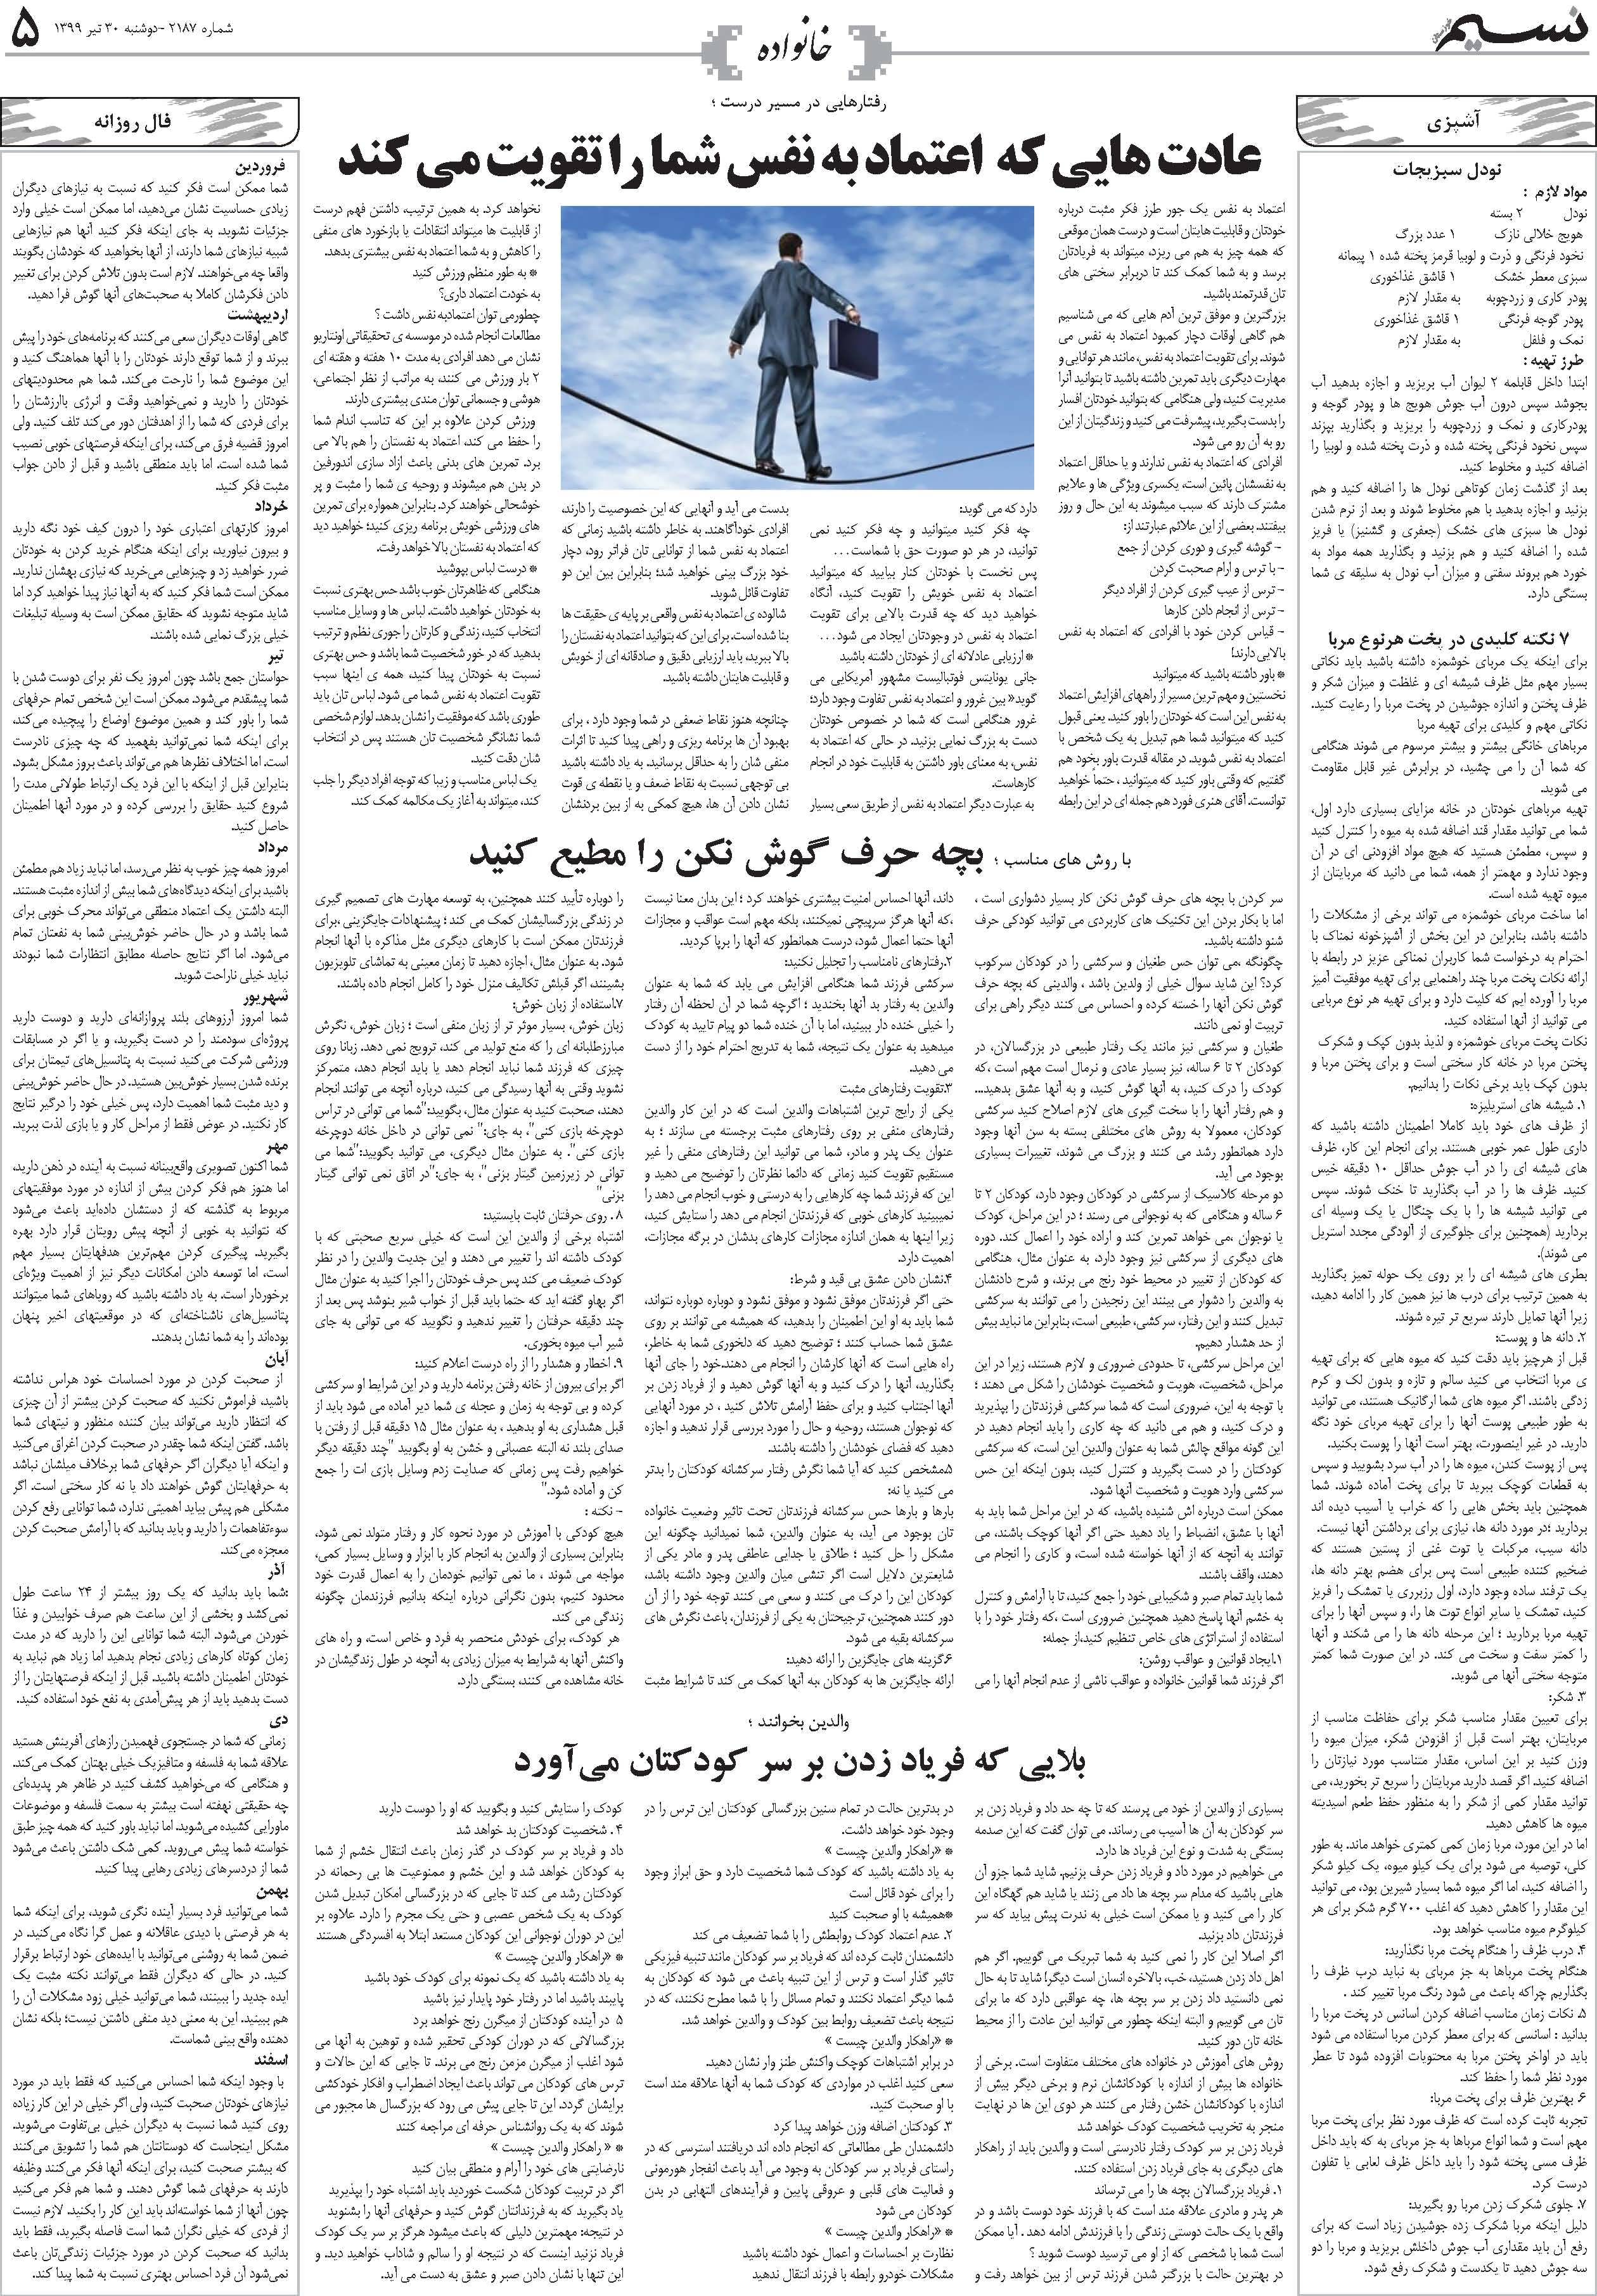 صفحه خانواده روزنامه نسیم شماره 2187